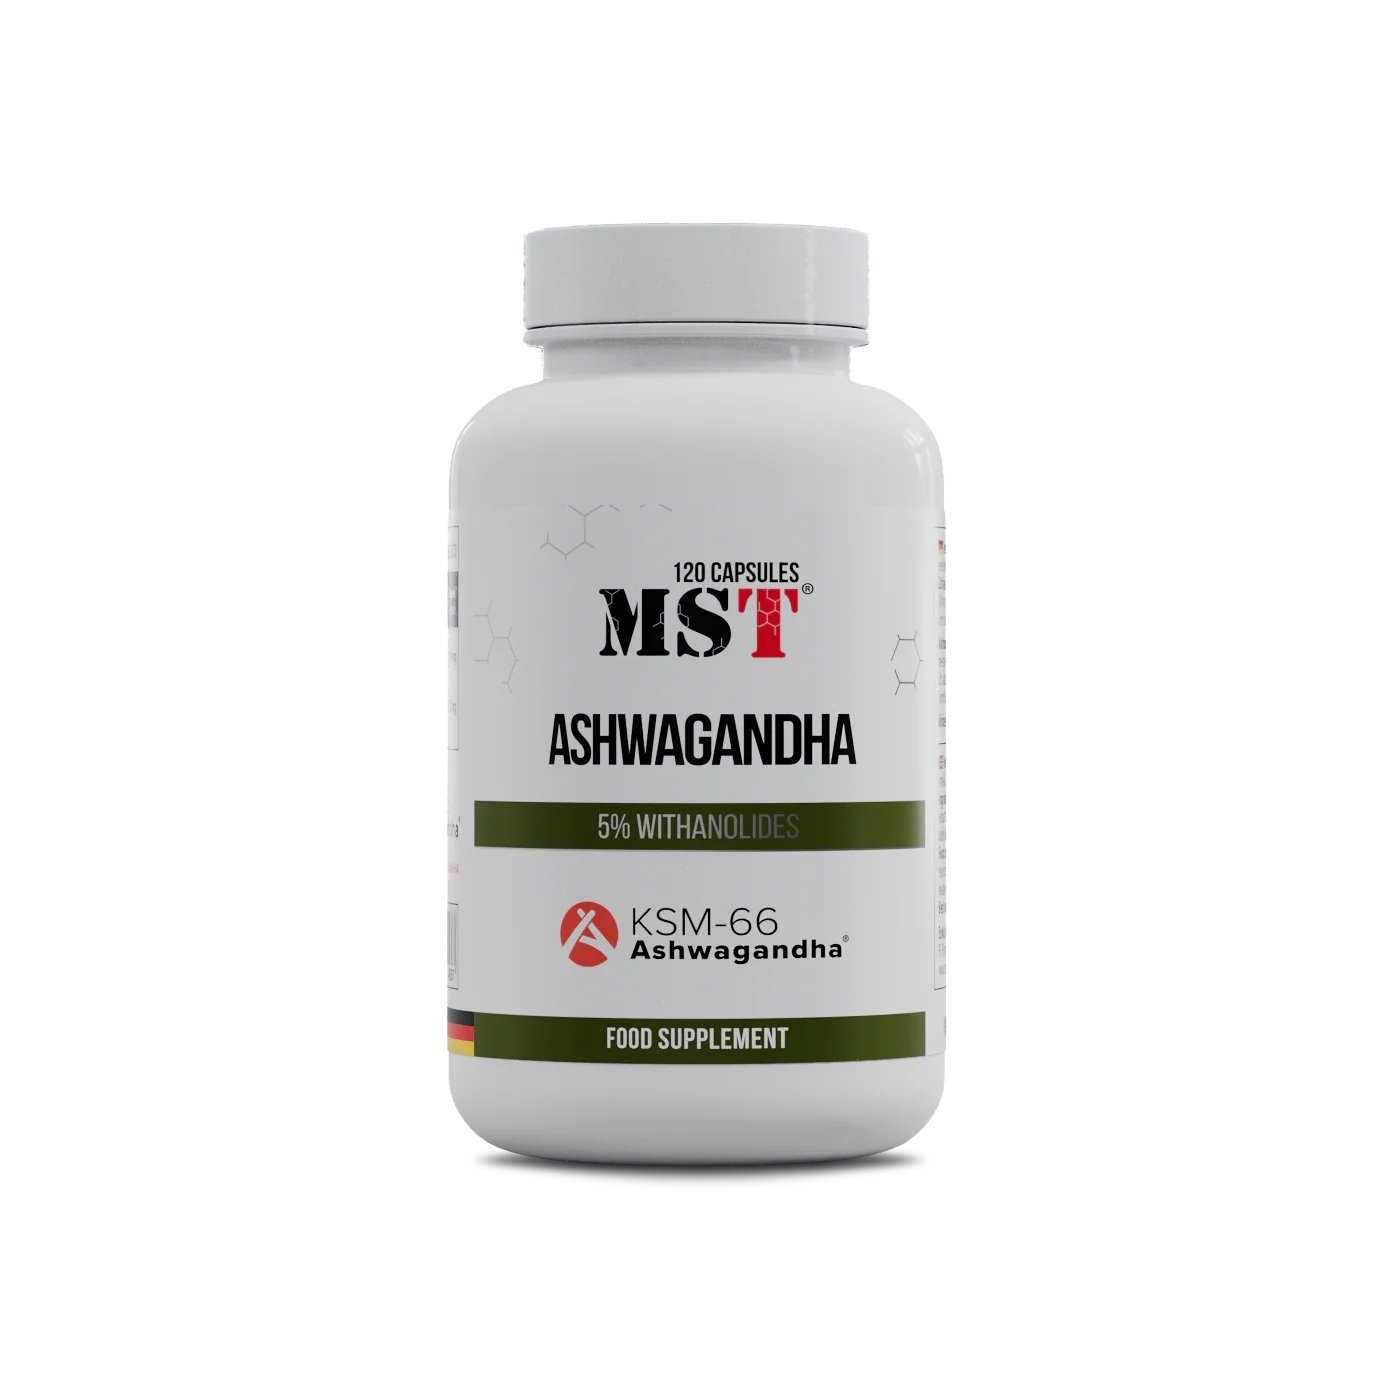 Натуральная добавка MST Ashwagandha KSM-66, 120 капсул,  мл, MST Nutrition. Hатуральные продукты. Поддержание здоровья 